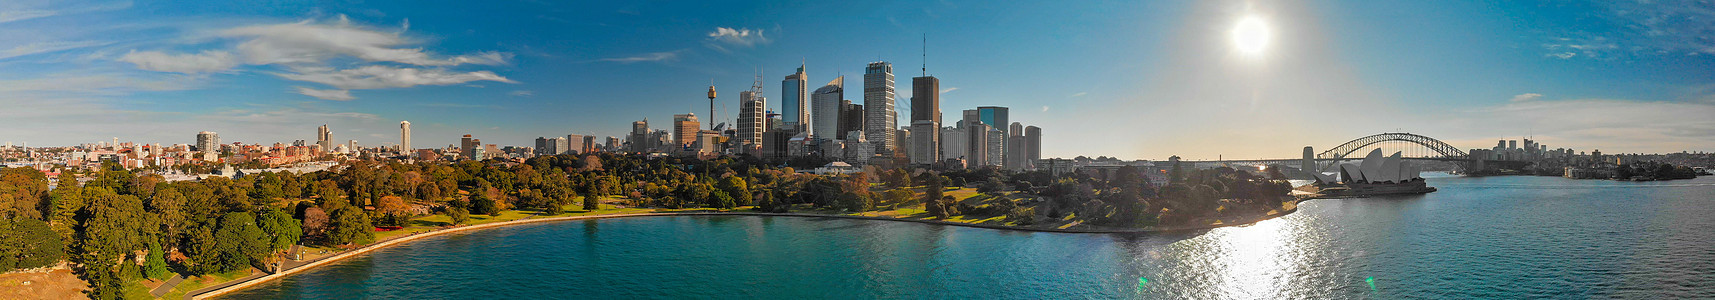 悉尼港湾的全景天文航空观察天空日落高楼地标城市建筑码头运输摩天大楼建筑学图片